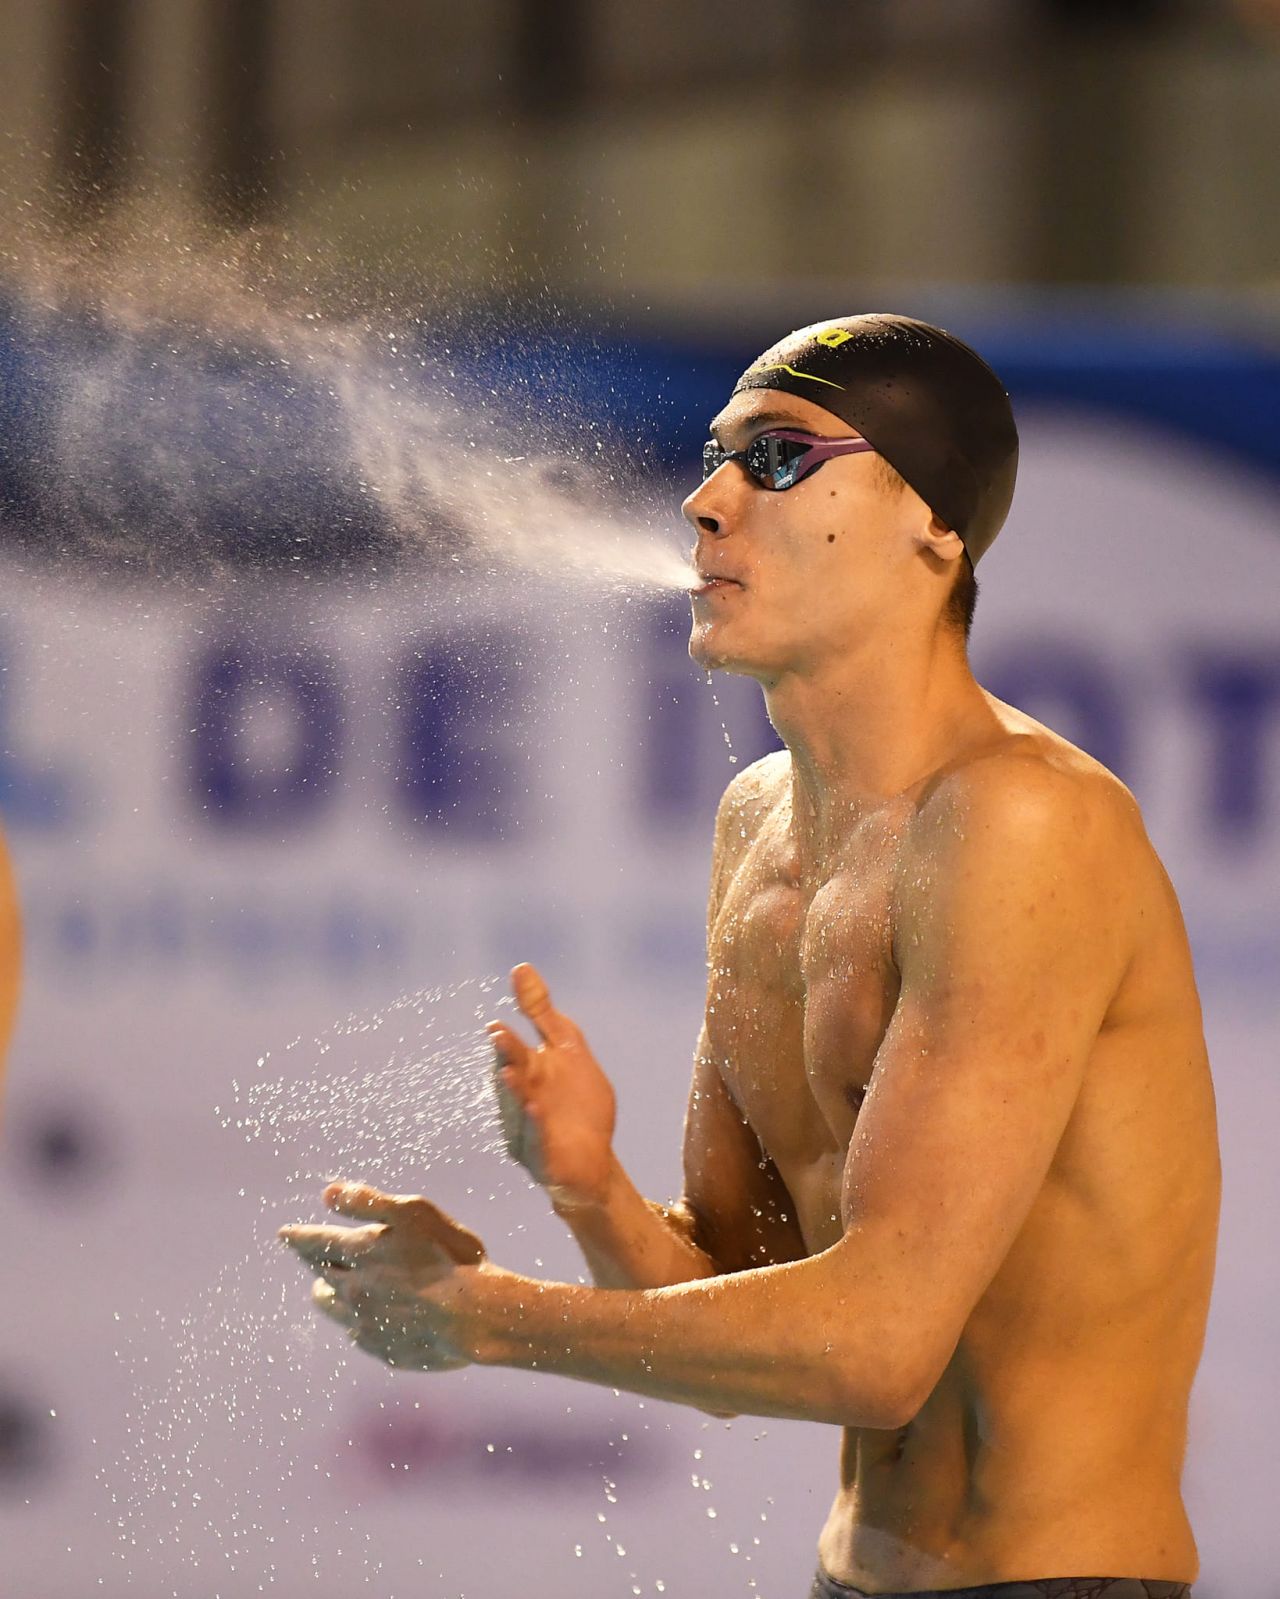 Barcelona îl aplaudă pe David Popovici! O nouă cursă de senzație încheiată cu aur pentru înotătorul român_14